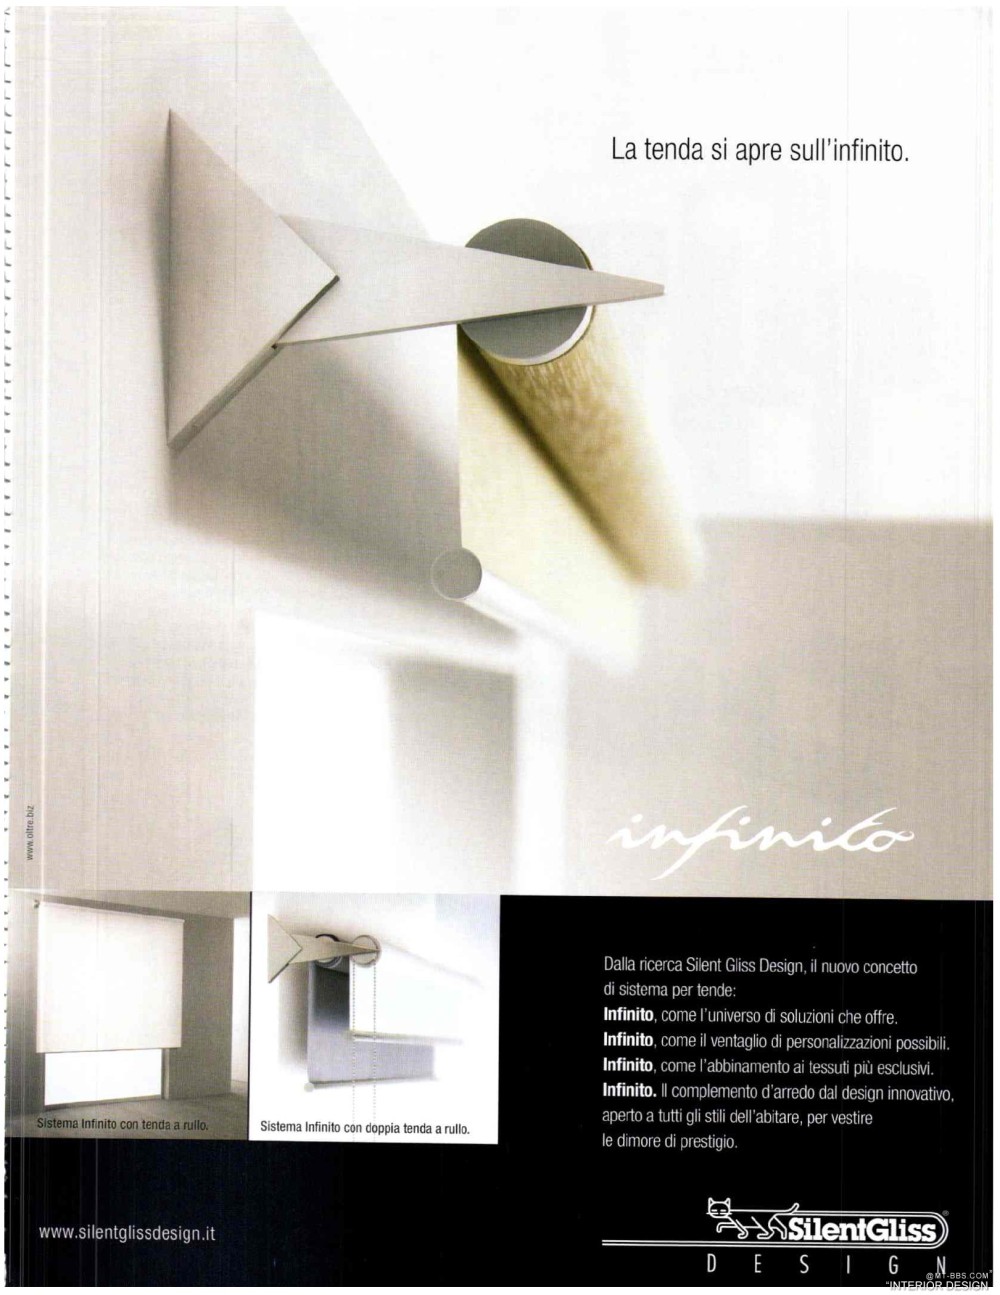 意大利AD 杂志 2012年全年JPG高清版本 全免（上传完毕）_0101.jpg